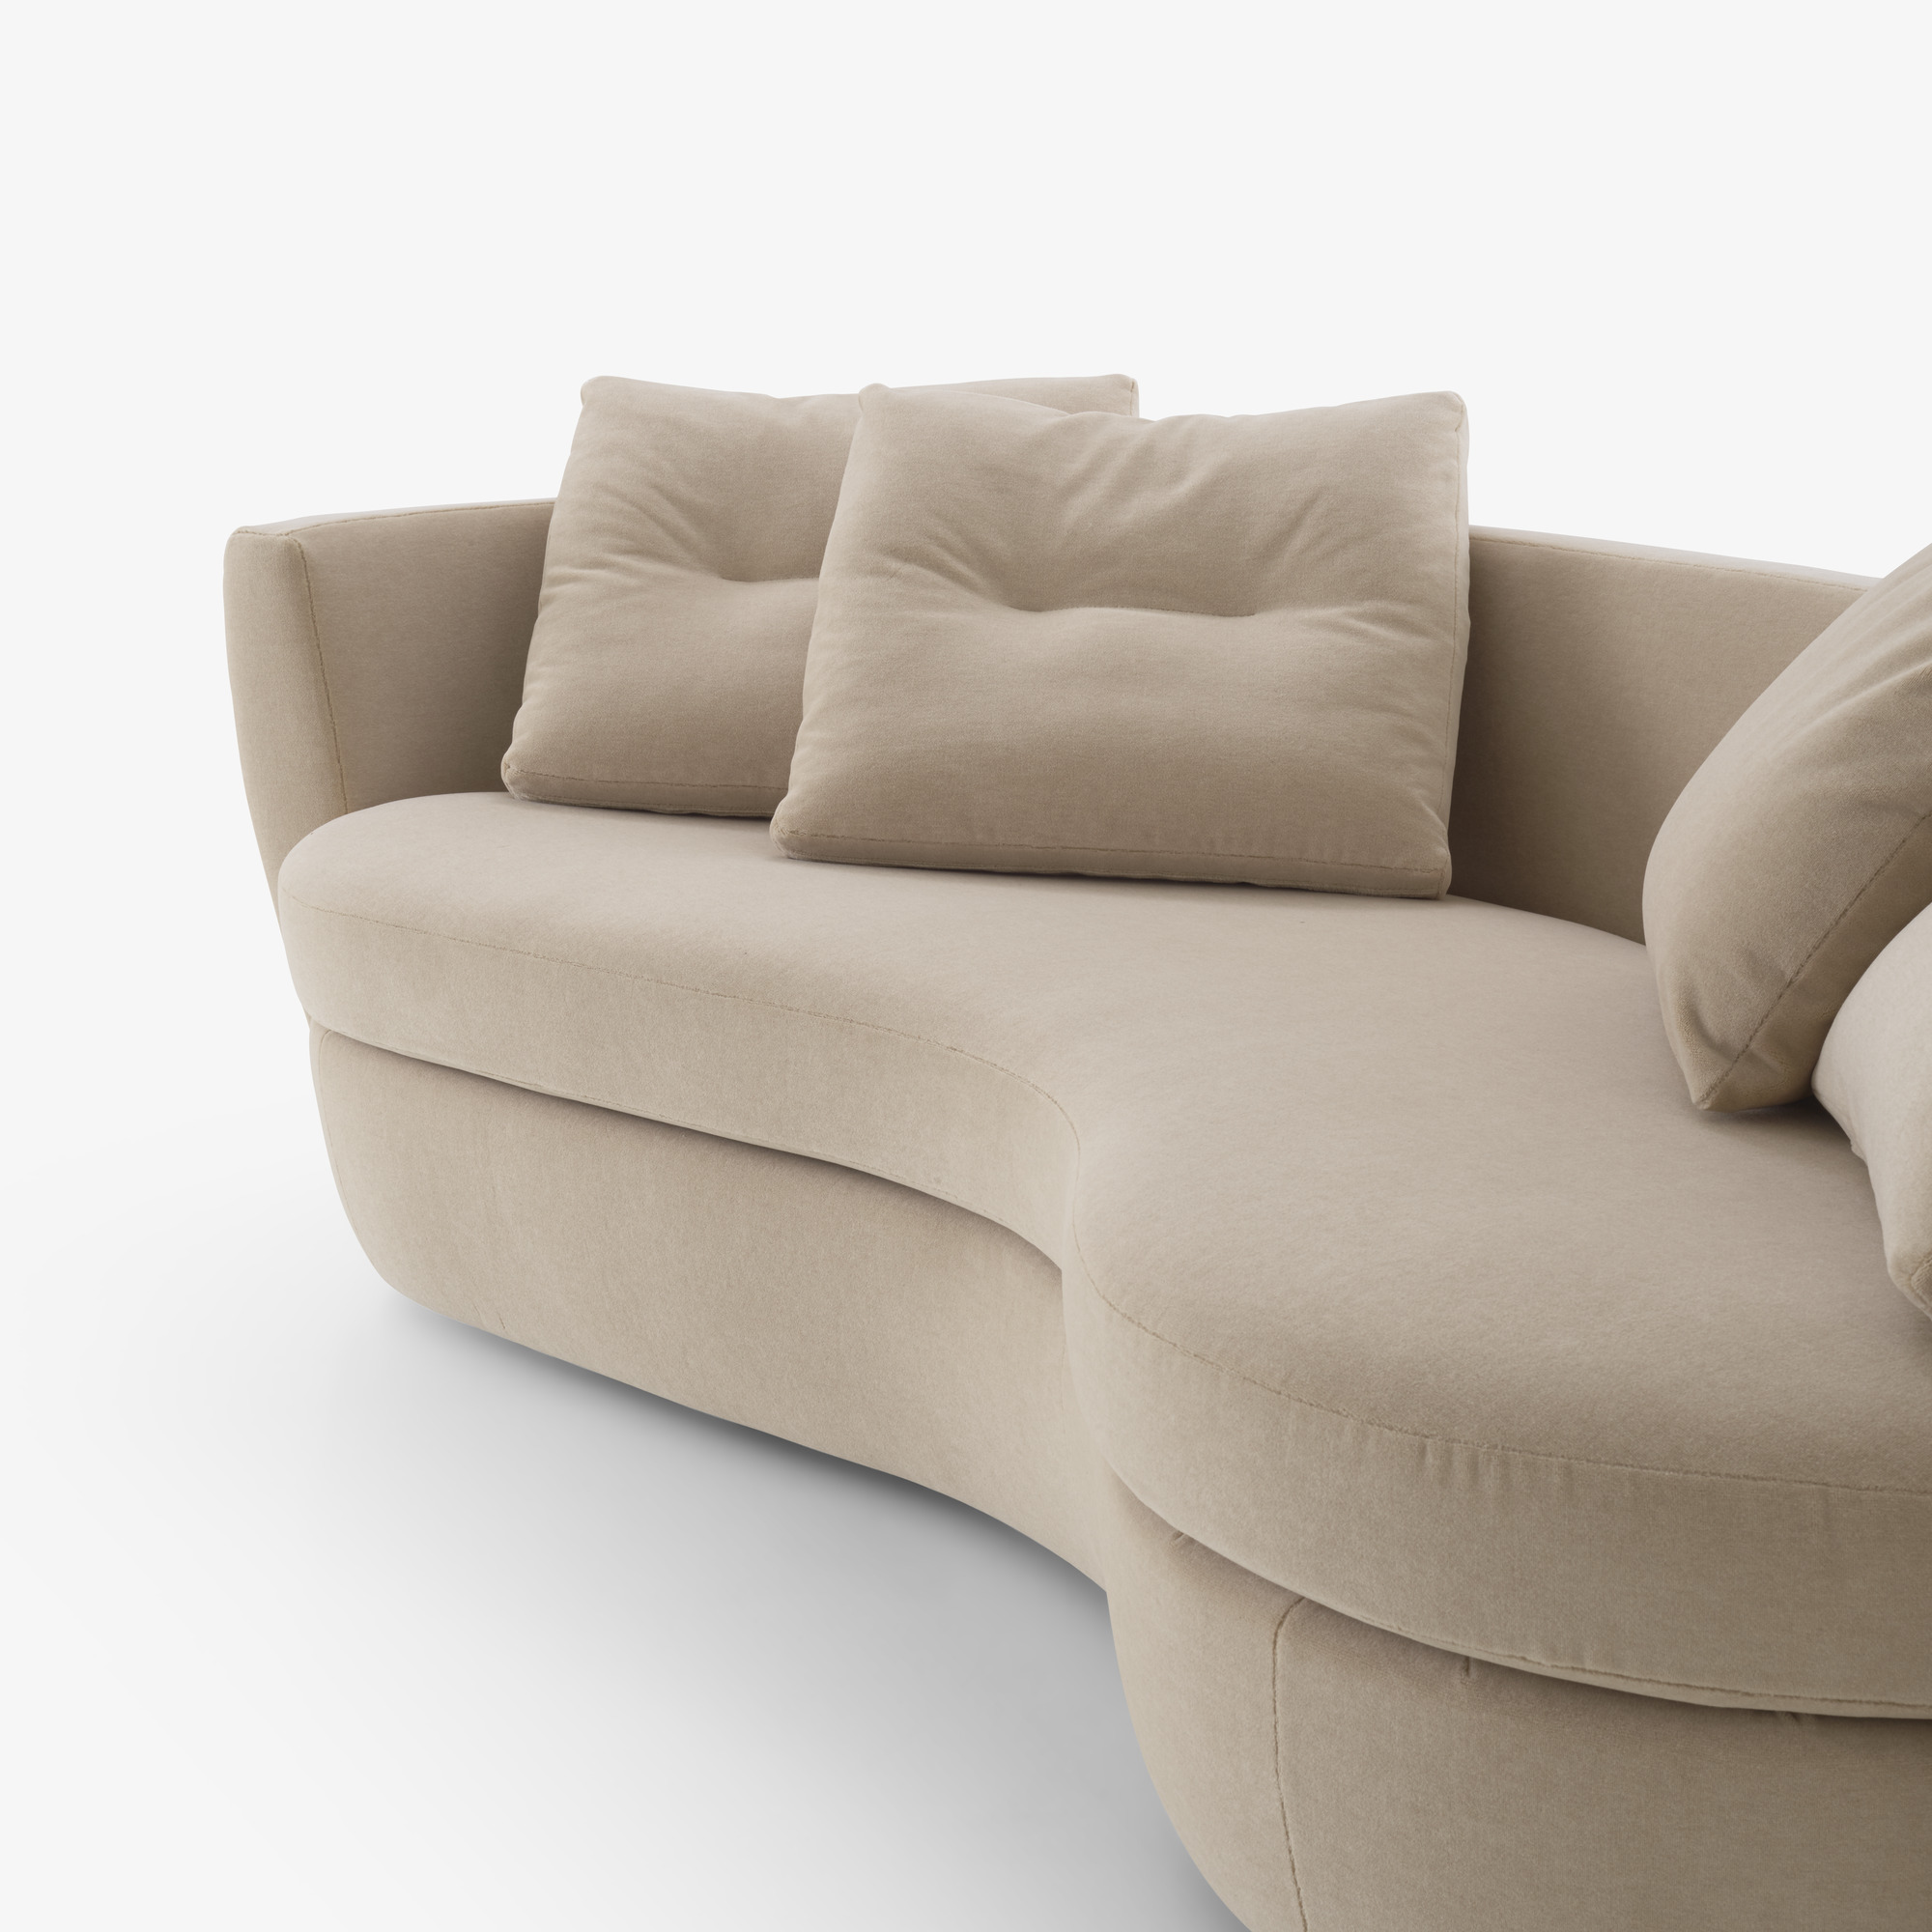 Image 曲线形沙发 套件  3